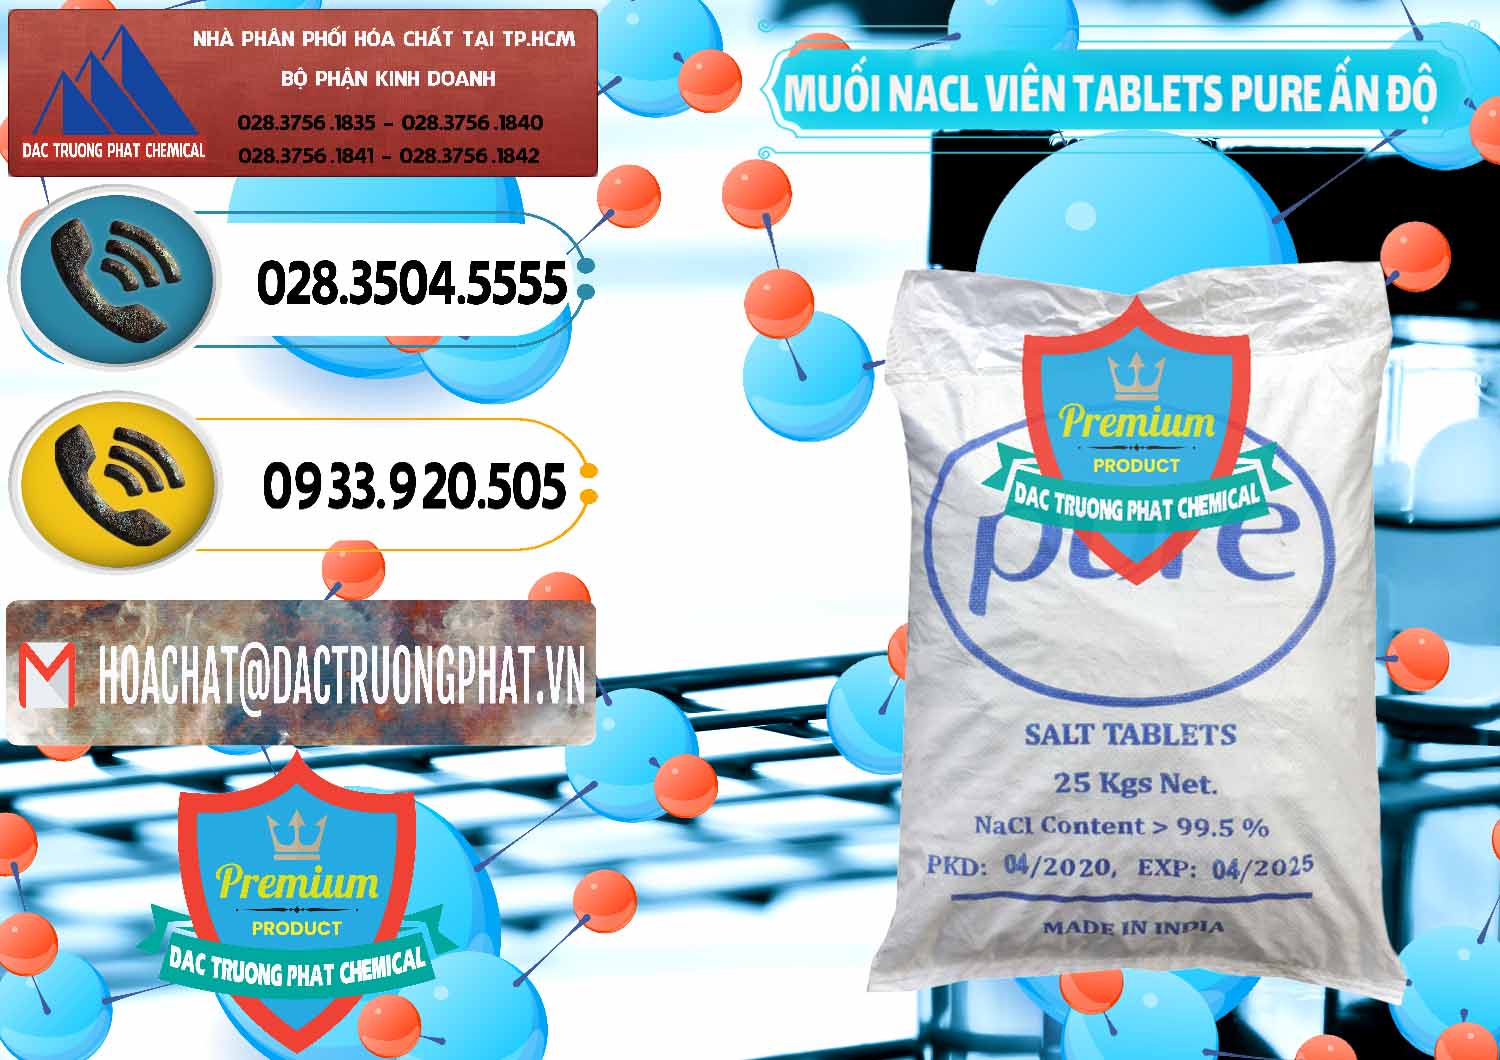 Chuyên phân phối ( bán ) Muối NaCL – Sodium Chloride Dạng Viên Tablets Pure Ấn Độ India - 0294 - Nơi phân phối - cung cấp hóa chất tại TP.HCM - hoachatdetnhuom.vn